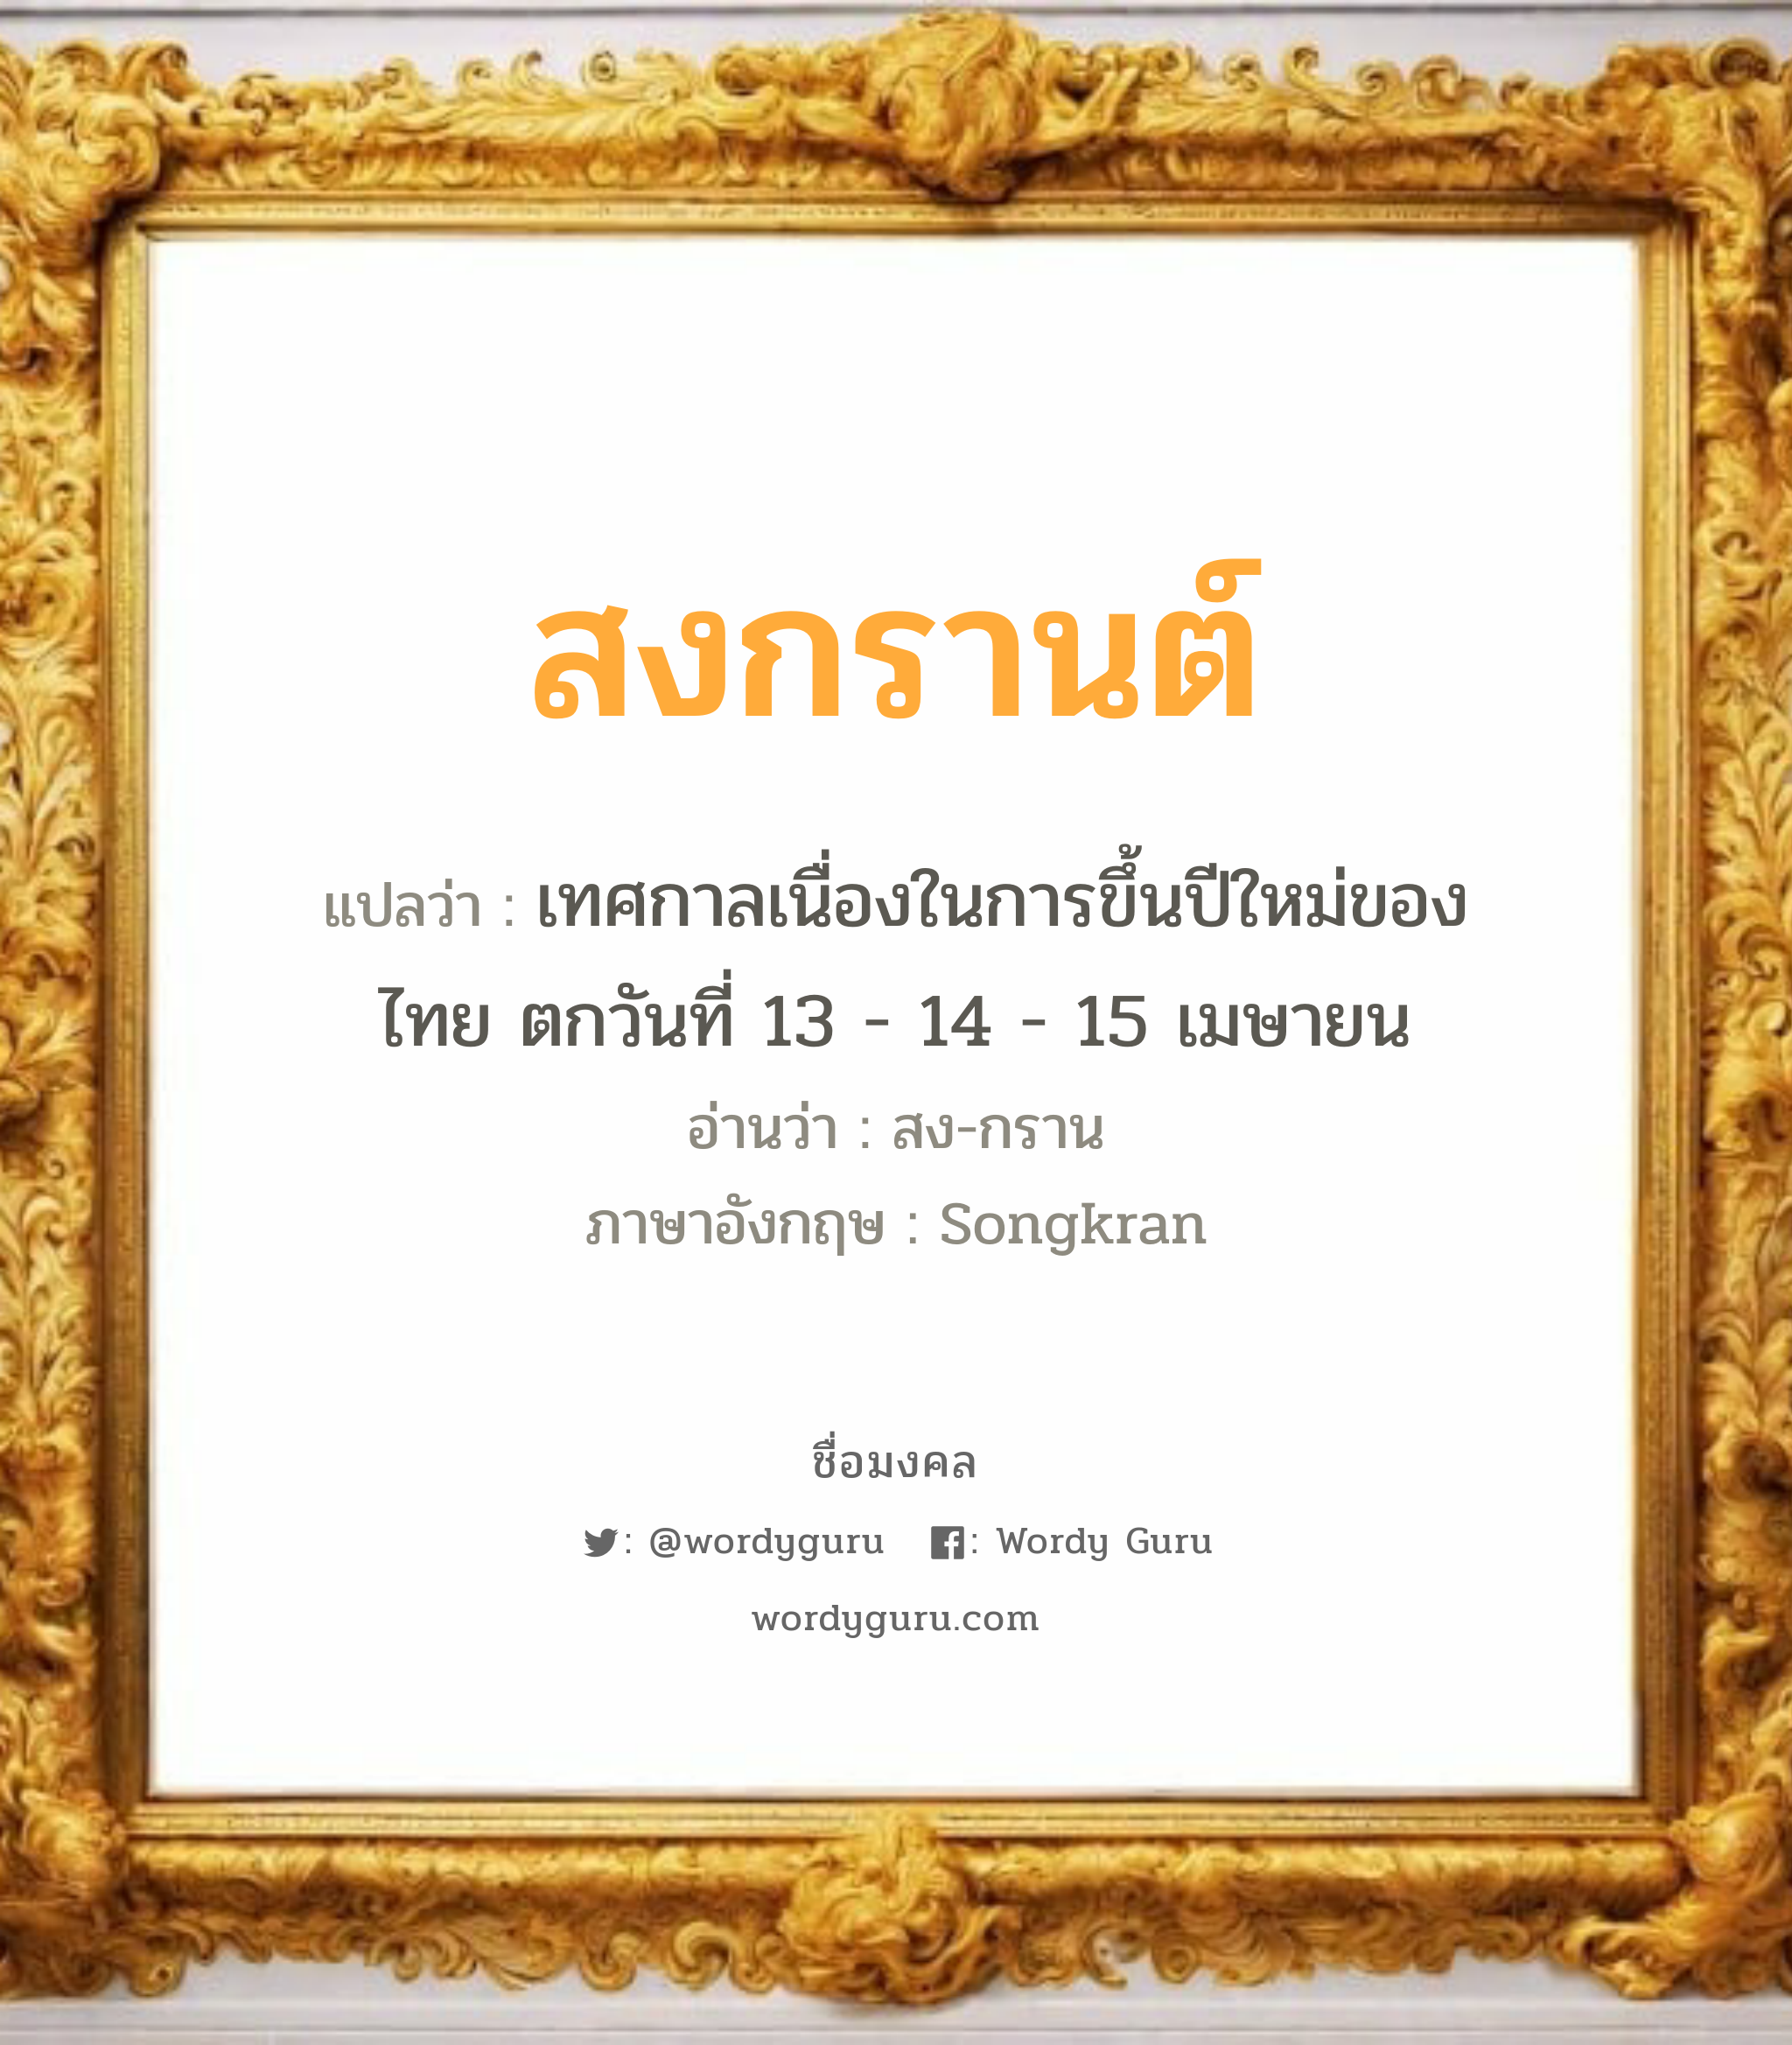 สงกรานต์ แปลว่า? สำหรับคนเกิดวันเสาร์, ชื่อมงคล สงกรานต์ วิเคราะห์ชื่อ สงกรานต์ แปลว่า เทศกาลเนื่องในการขึ้นปีใหม่ของไทย ตกวันที่ 13 - 14 - 15 เมษายน อ่านว่า สง-กราน ภาษาอังกฤษ Songkran เพศ เหมาะกับ ผู้ชาย, ลูกชาย หมวด วันมงคล วันพุธกลางวัน, วันพุธกลางคืน, วันเสาร์